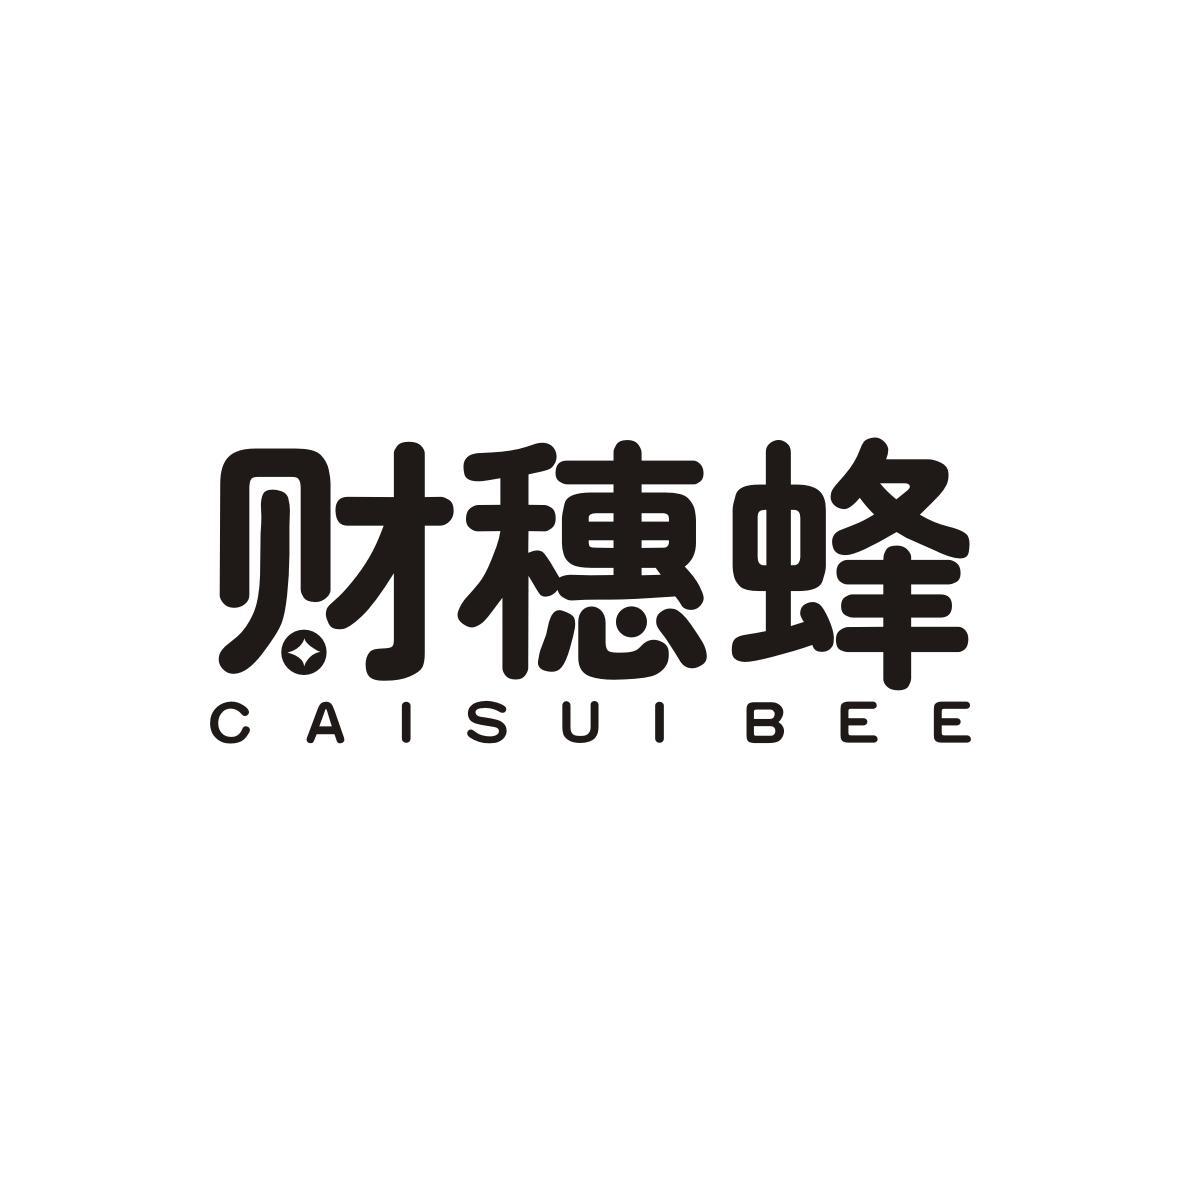 财穗蜂 CAISUI BEE